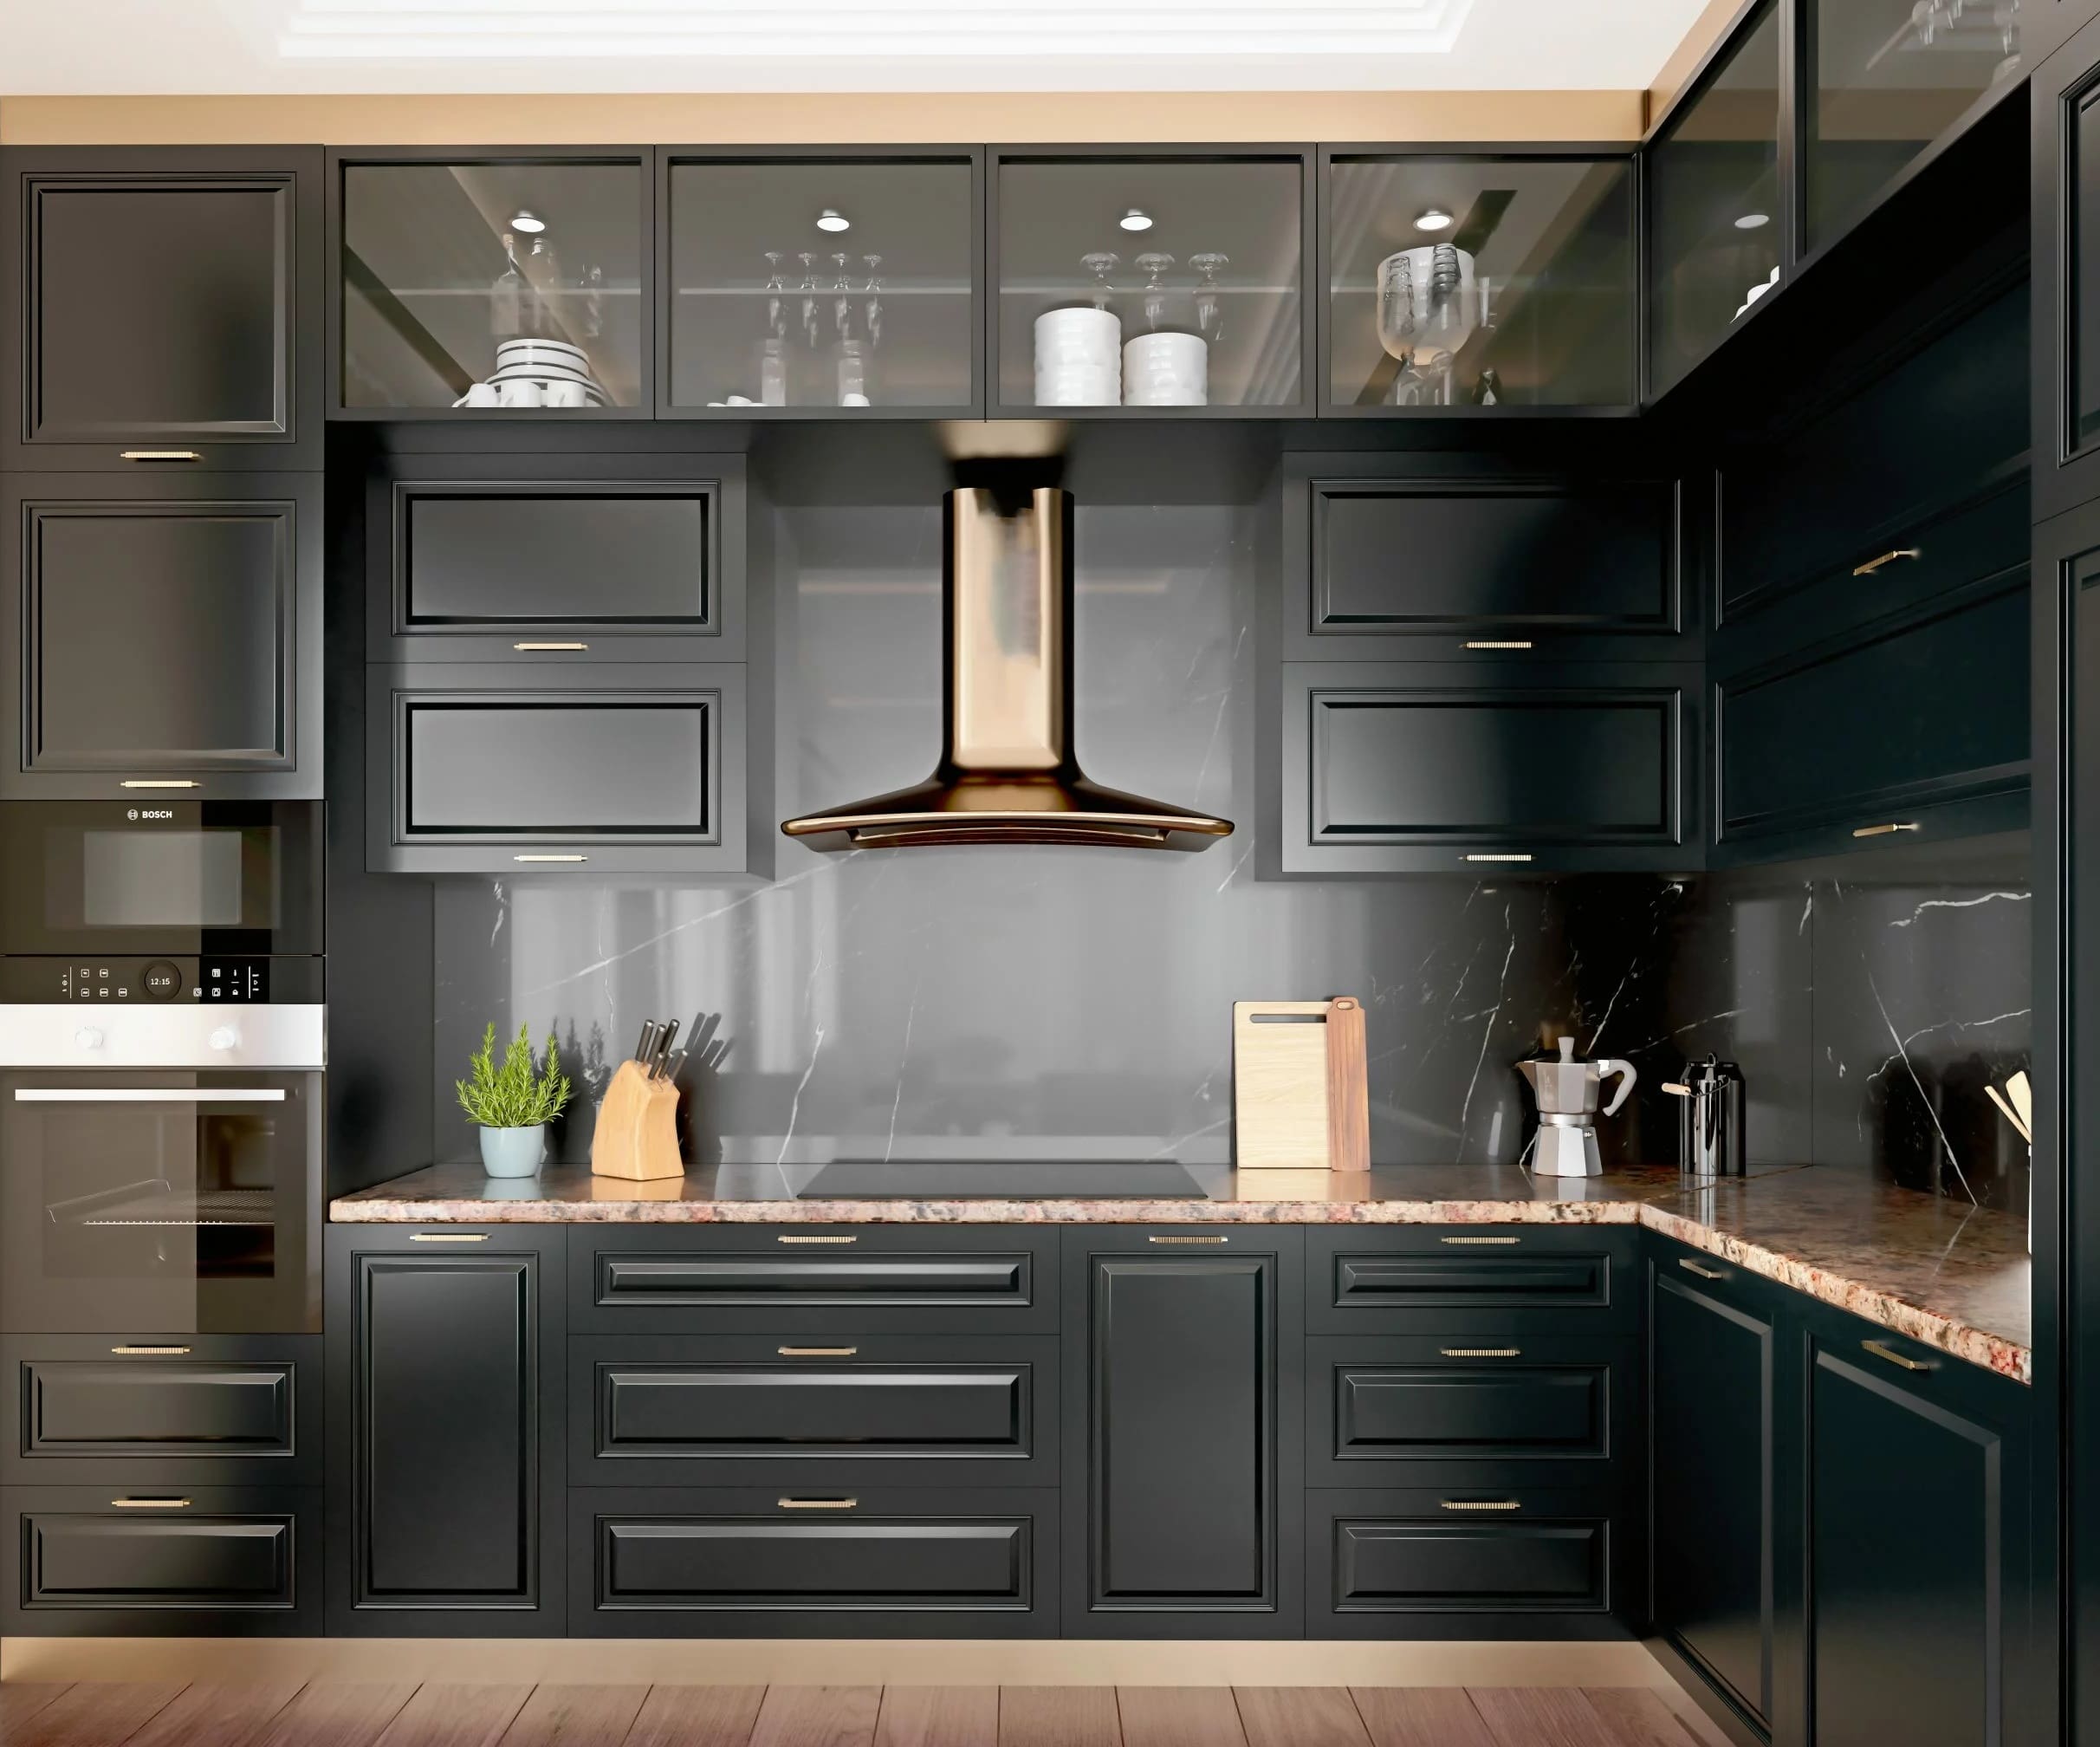 رنگ تیره با جزئیات روشن برای کابینت آشپزخانه کوچک